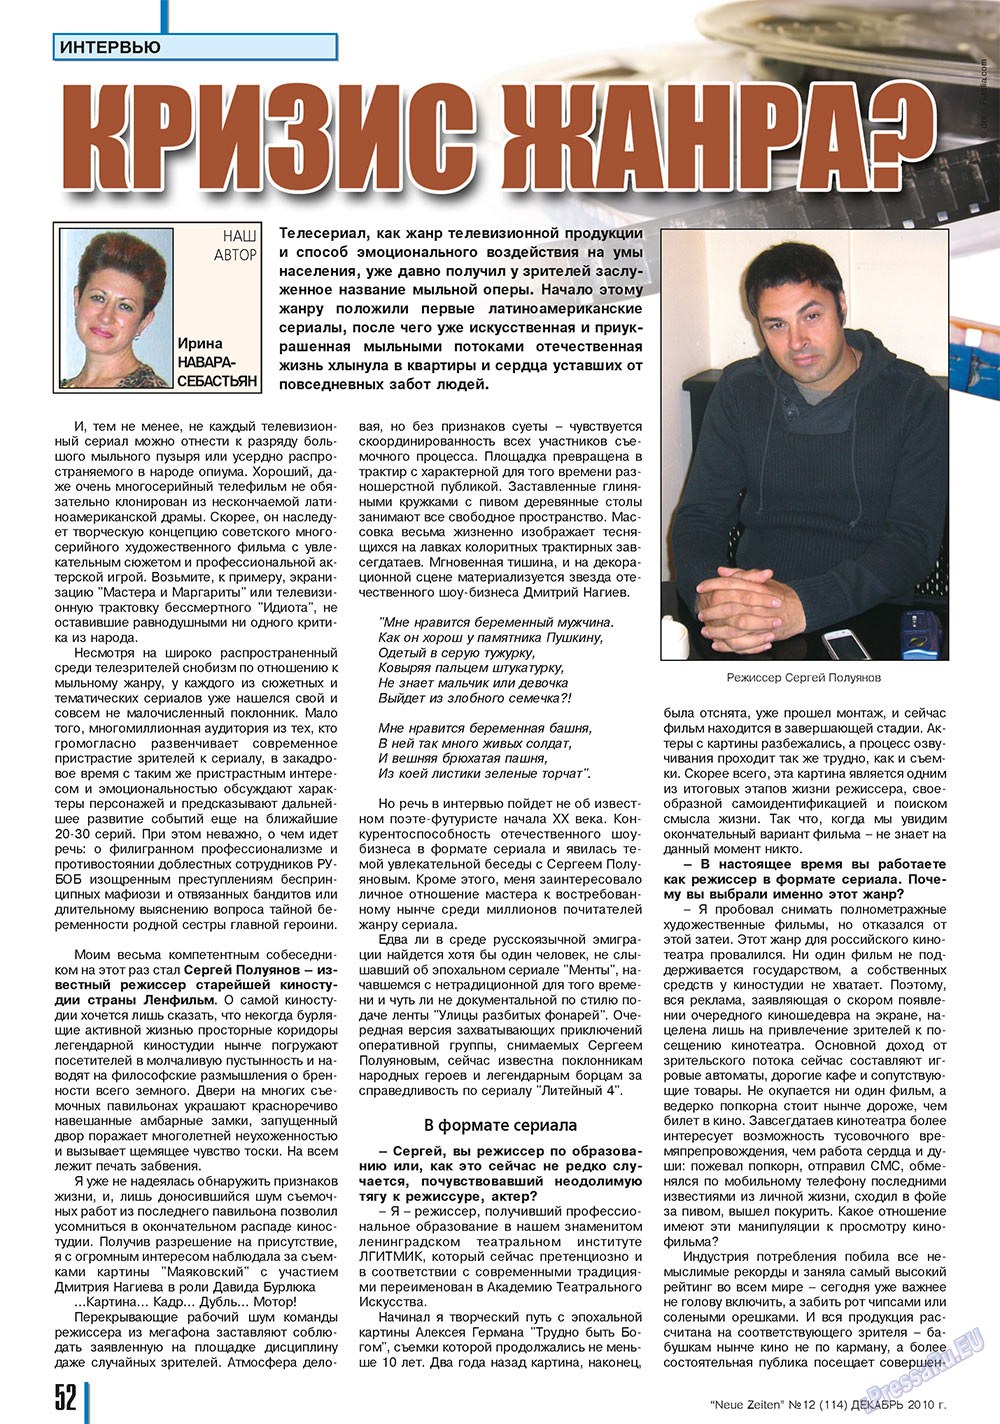 Neue Zeiten, журнал. 2010 №12 стр.52